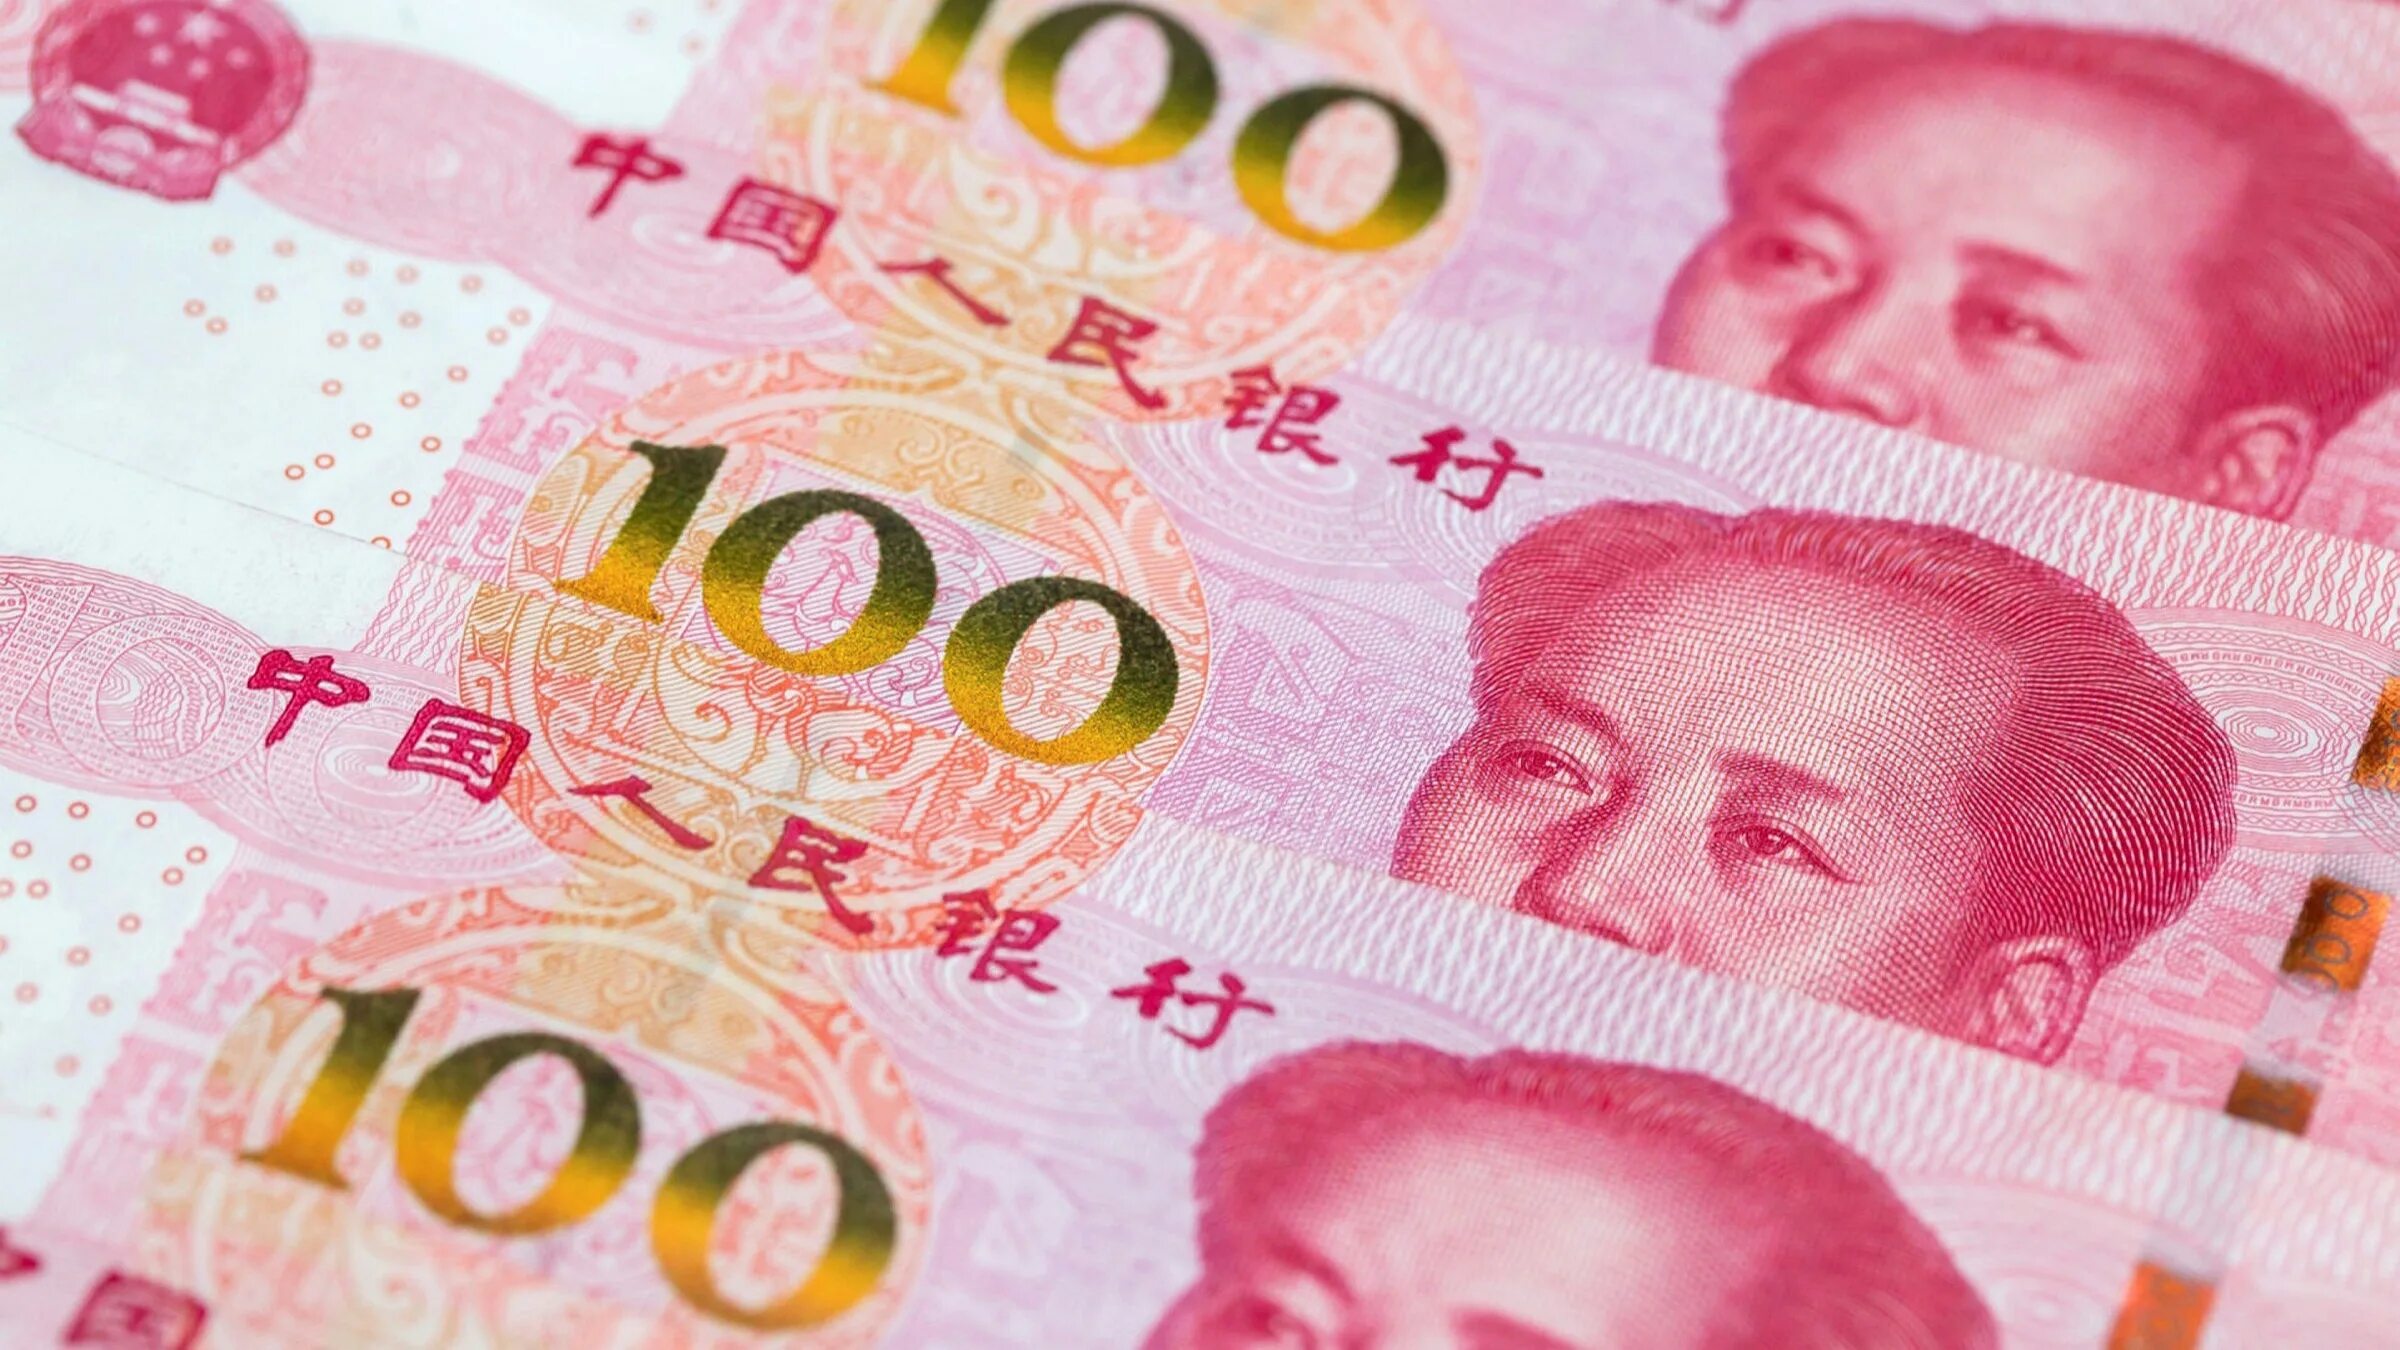 25 юаней в тенге. 100 Юаней. Китайская валюта. Китайский юань. Валюта Китая.